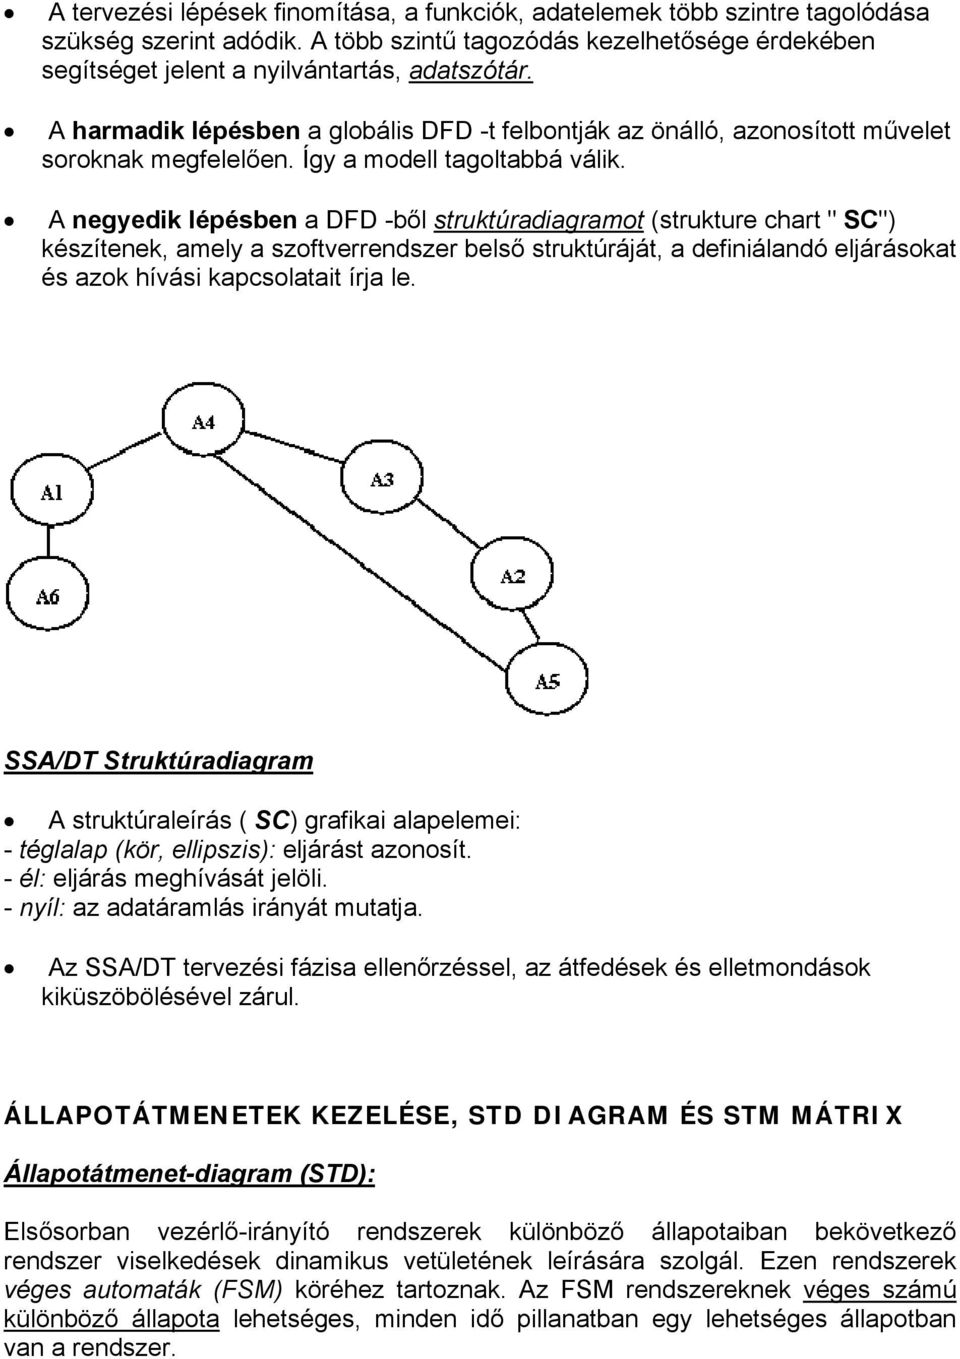 A negyedik lépésben a DFD -ből struktúradiagramot (strukture chart " SC") készítenek, amely a szoftverrendszer belső struktúráját, a definiálandó eljárásokat és azok hívási kapcsolatait írja le.